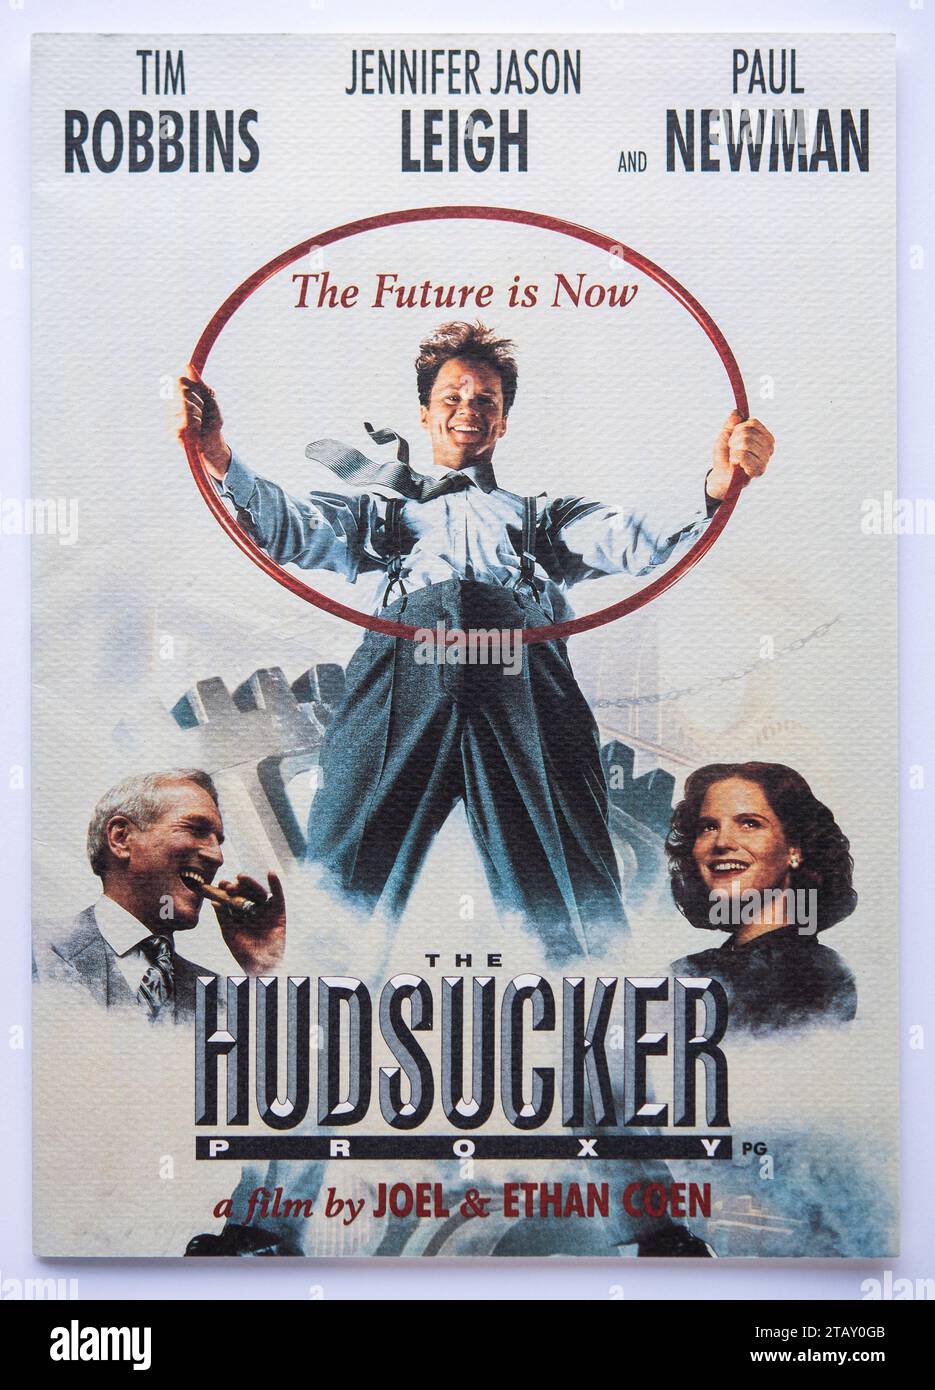 Prima copertina di informazioni pubblicitarie per il film The Hudsucker Proxy, una commedia diretta dai fratelli Coen, che è stata distribuita nel 1994 Foto Stock